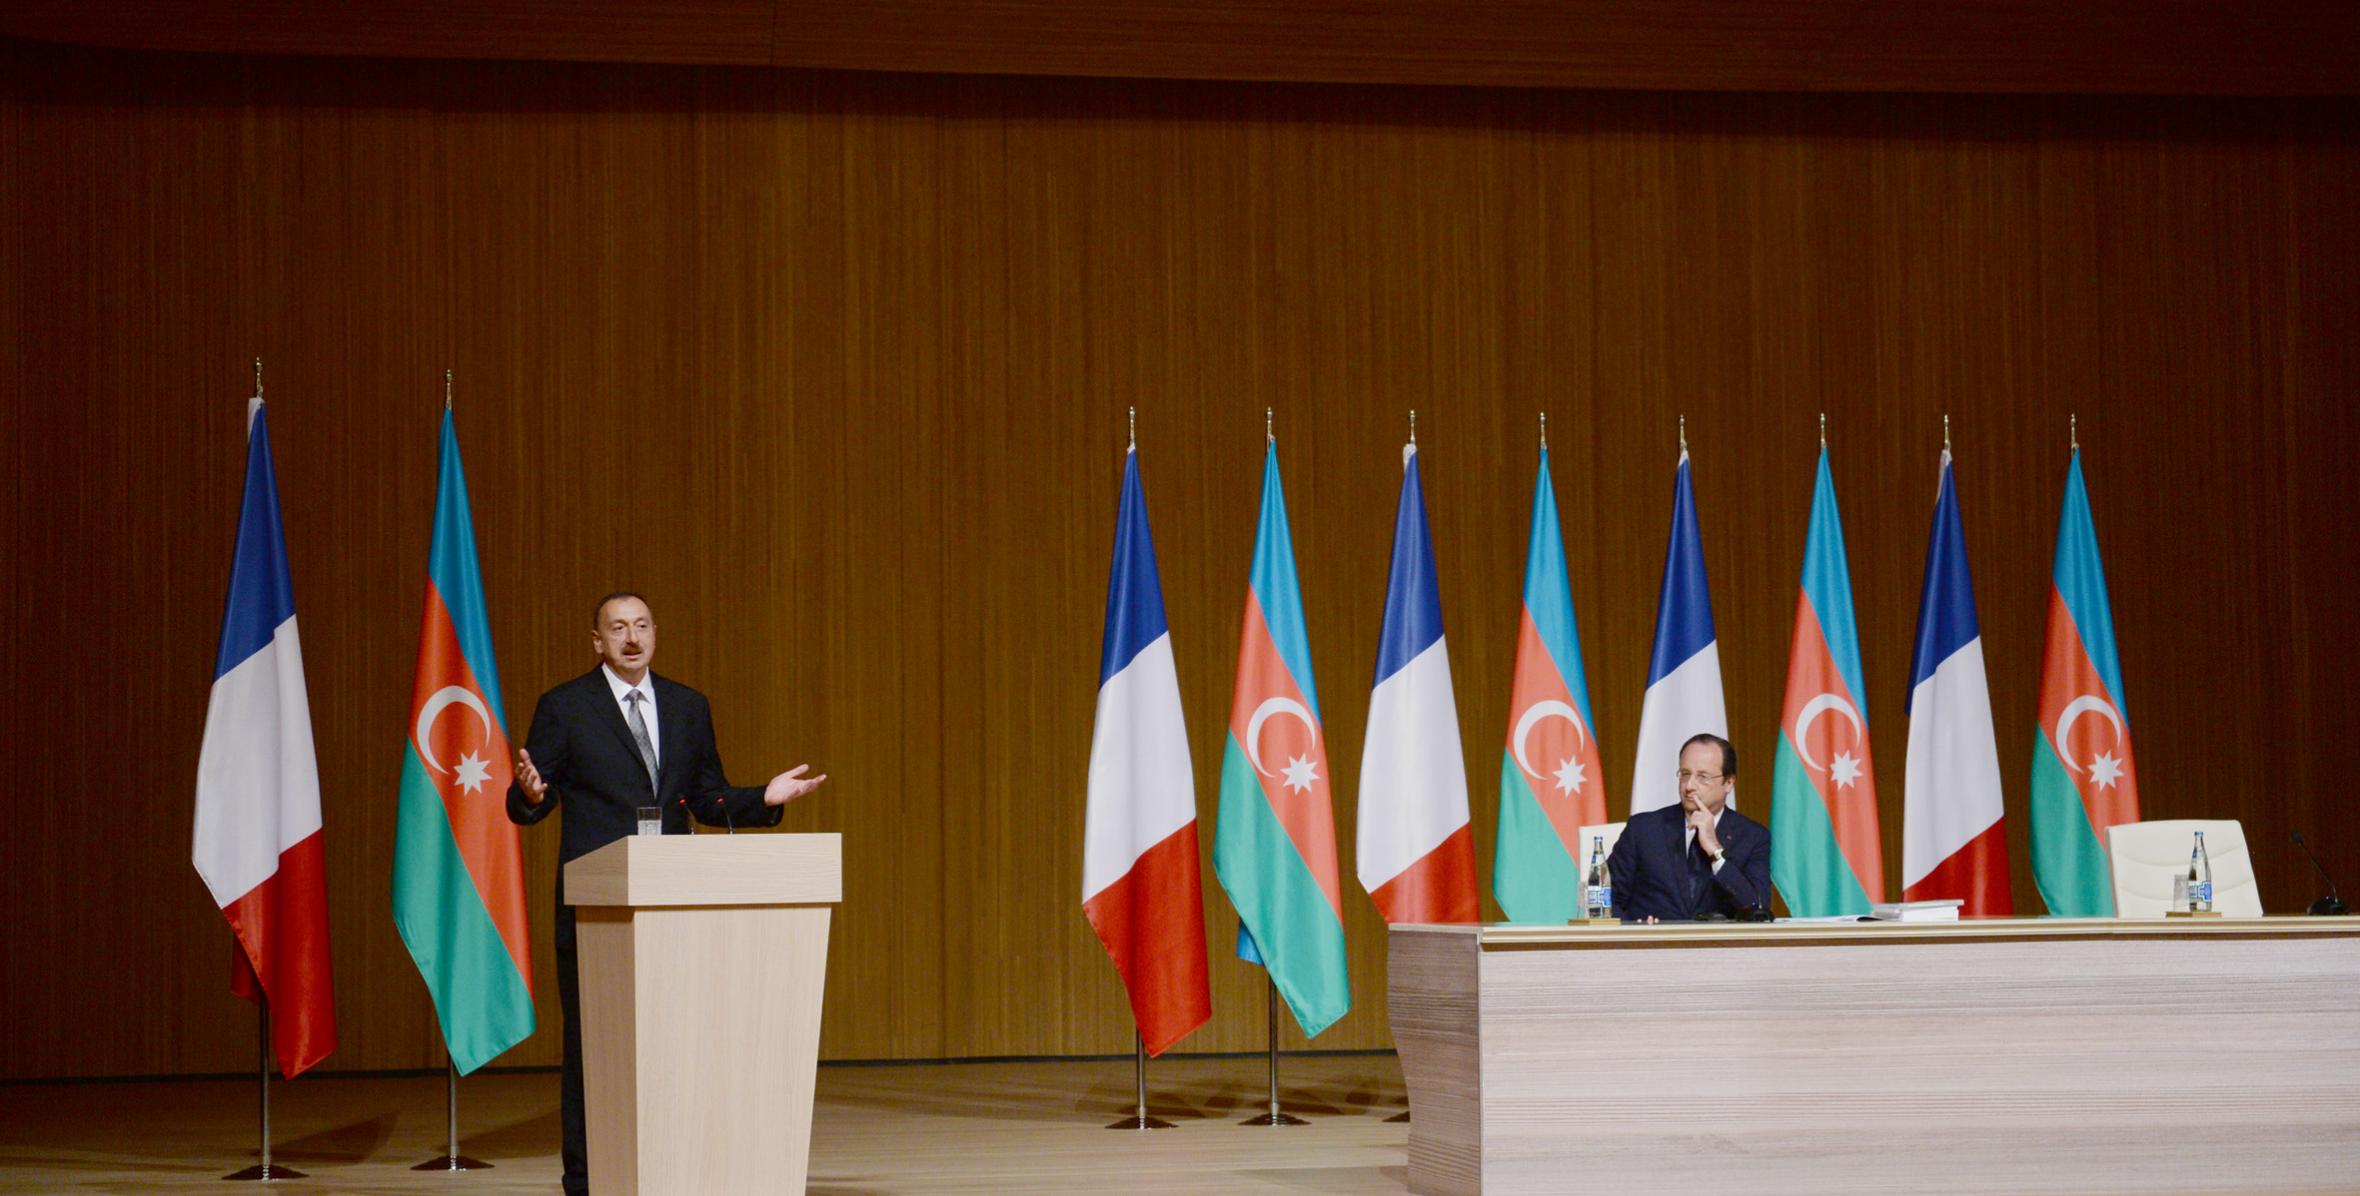 İlham Əliyev və Prezident Fransua Olland Azərbaycan-Fransa biznes forumunda iştirak etmişlər